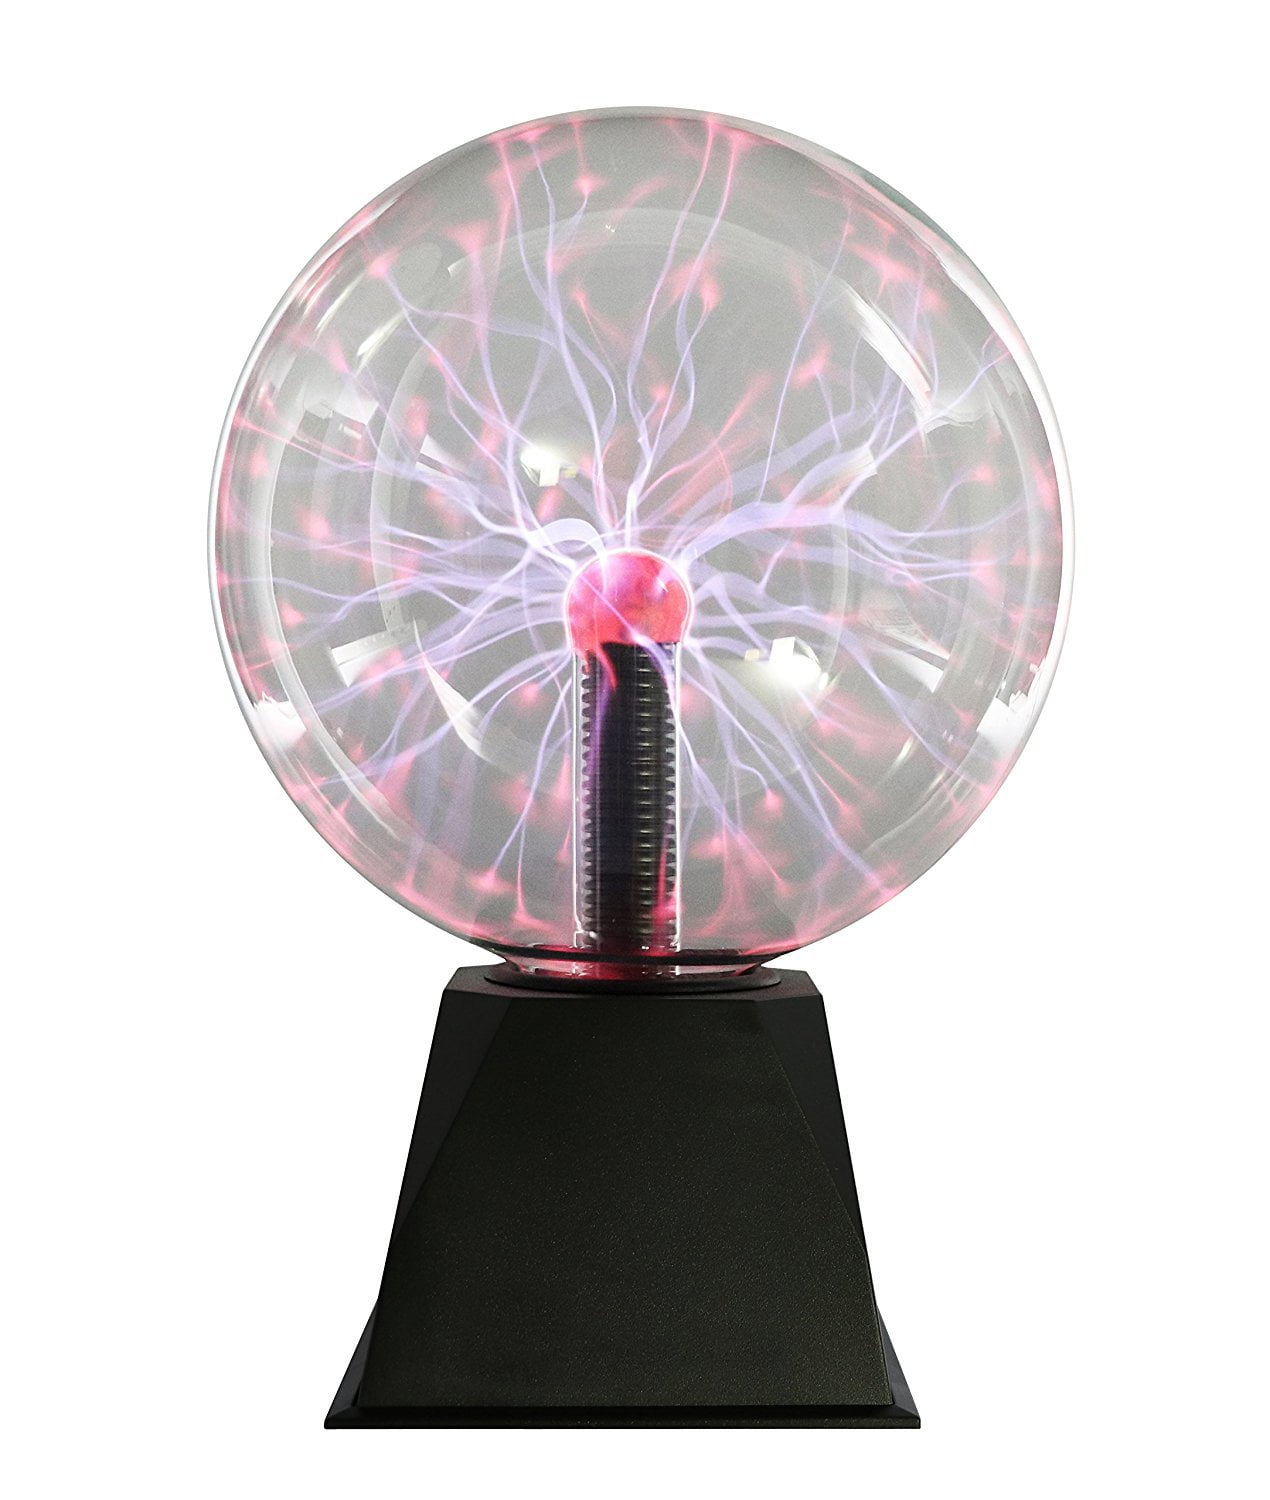 Plasma Ball 8 po, électricité statique, lampe plasma, Touch